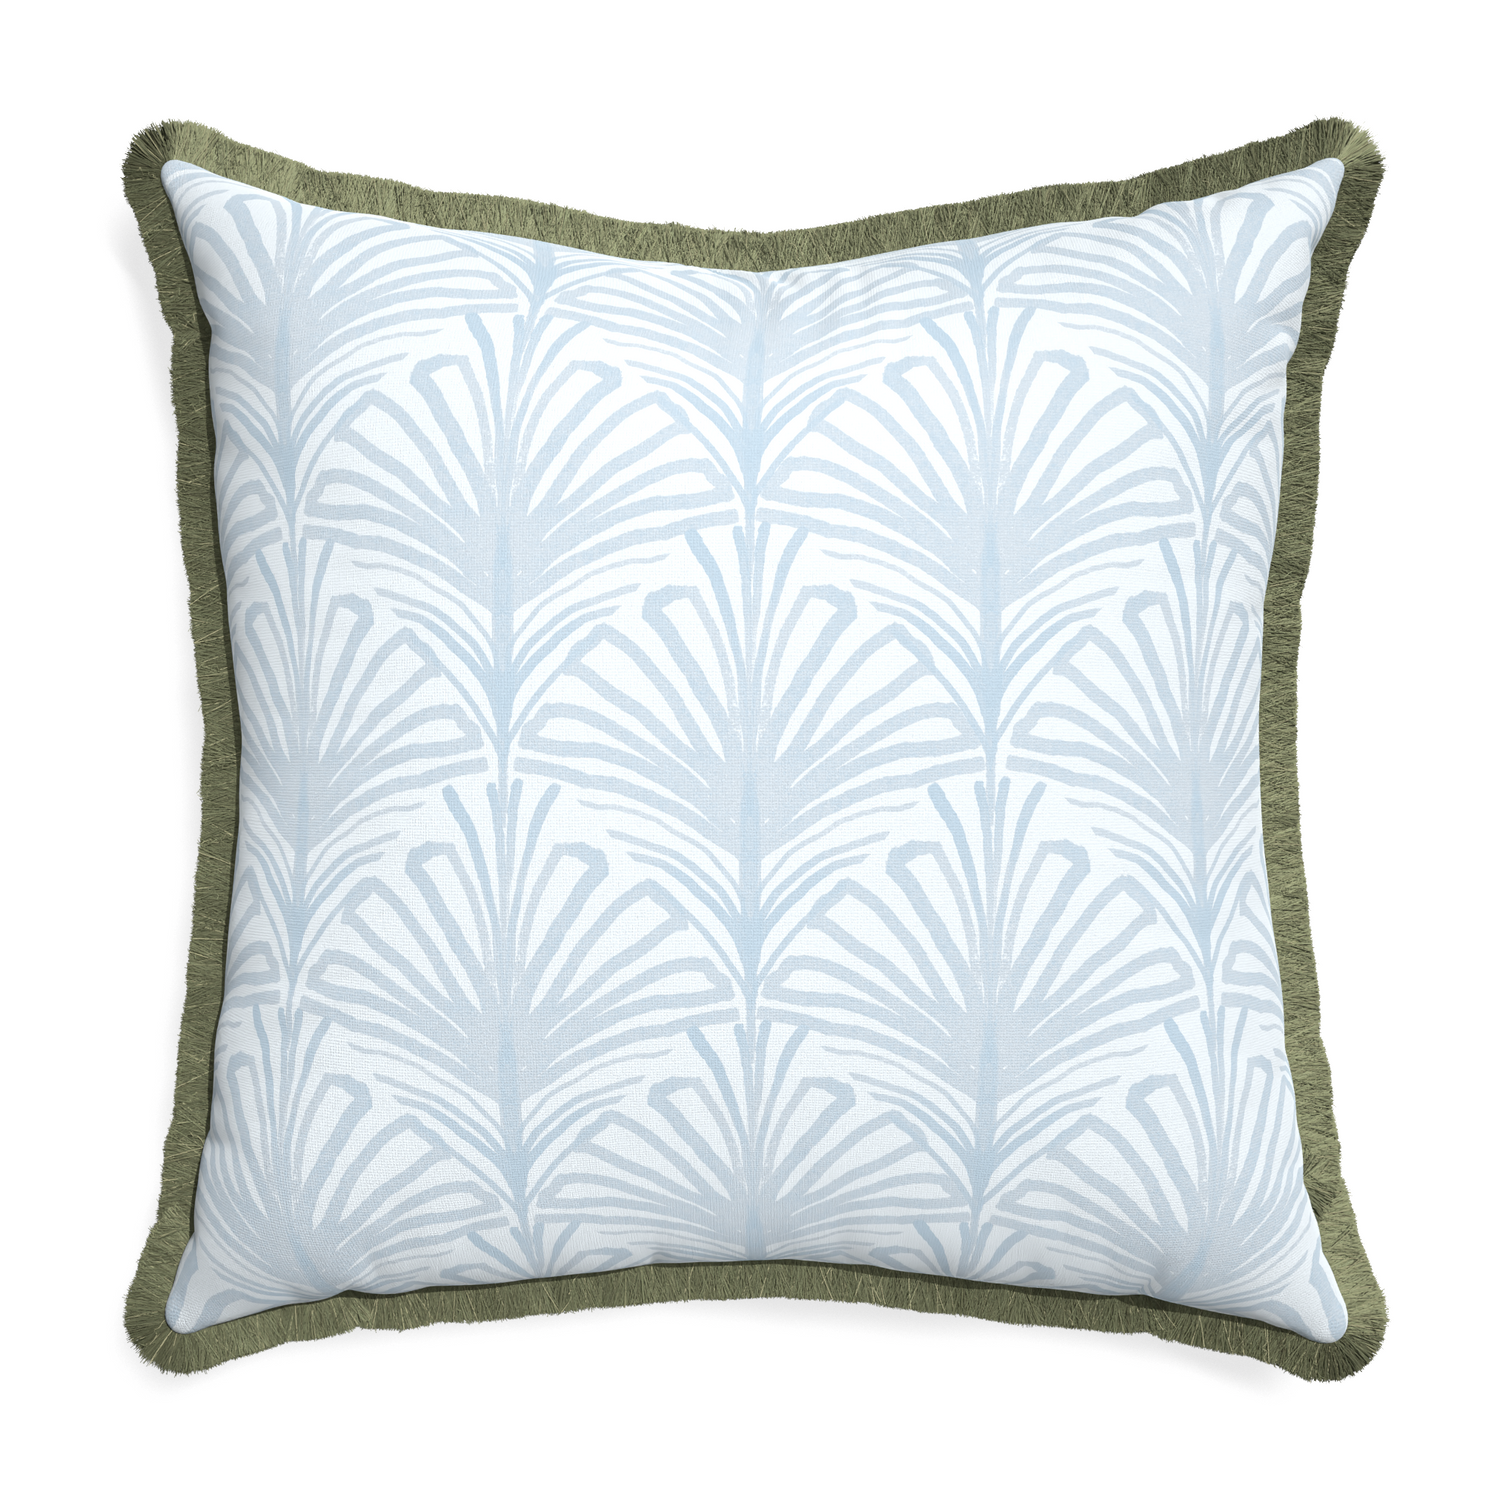 Euro-sham suzy sky custom pillow with sage fringe on white background